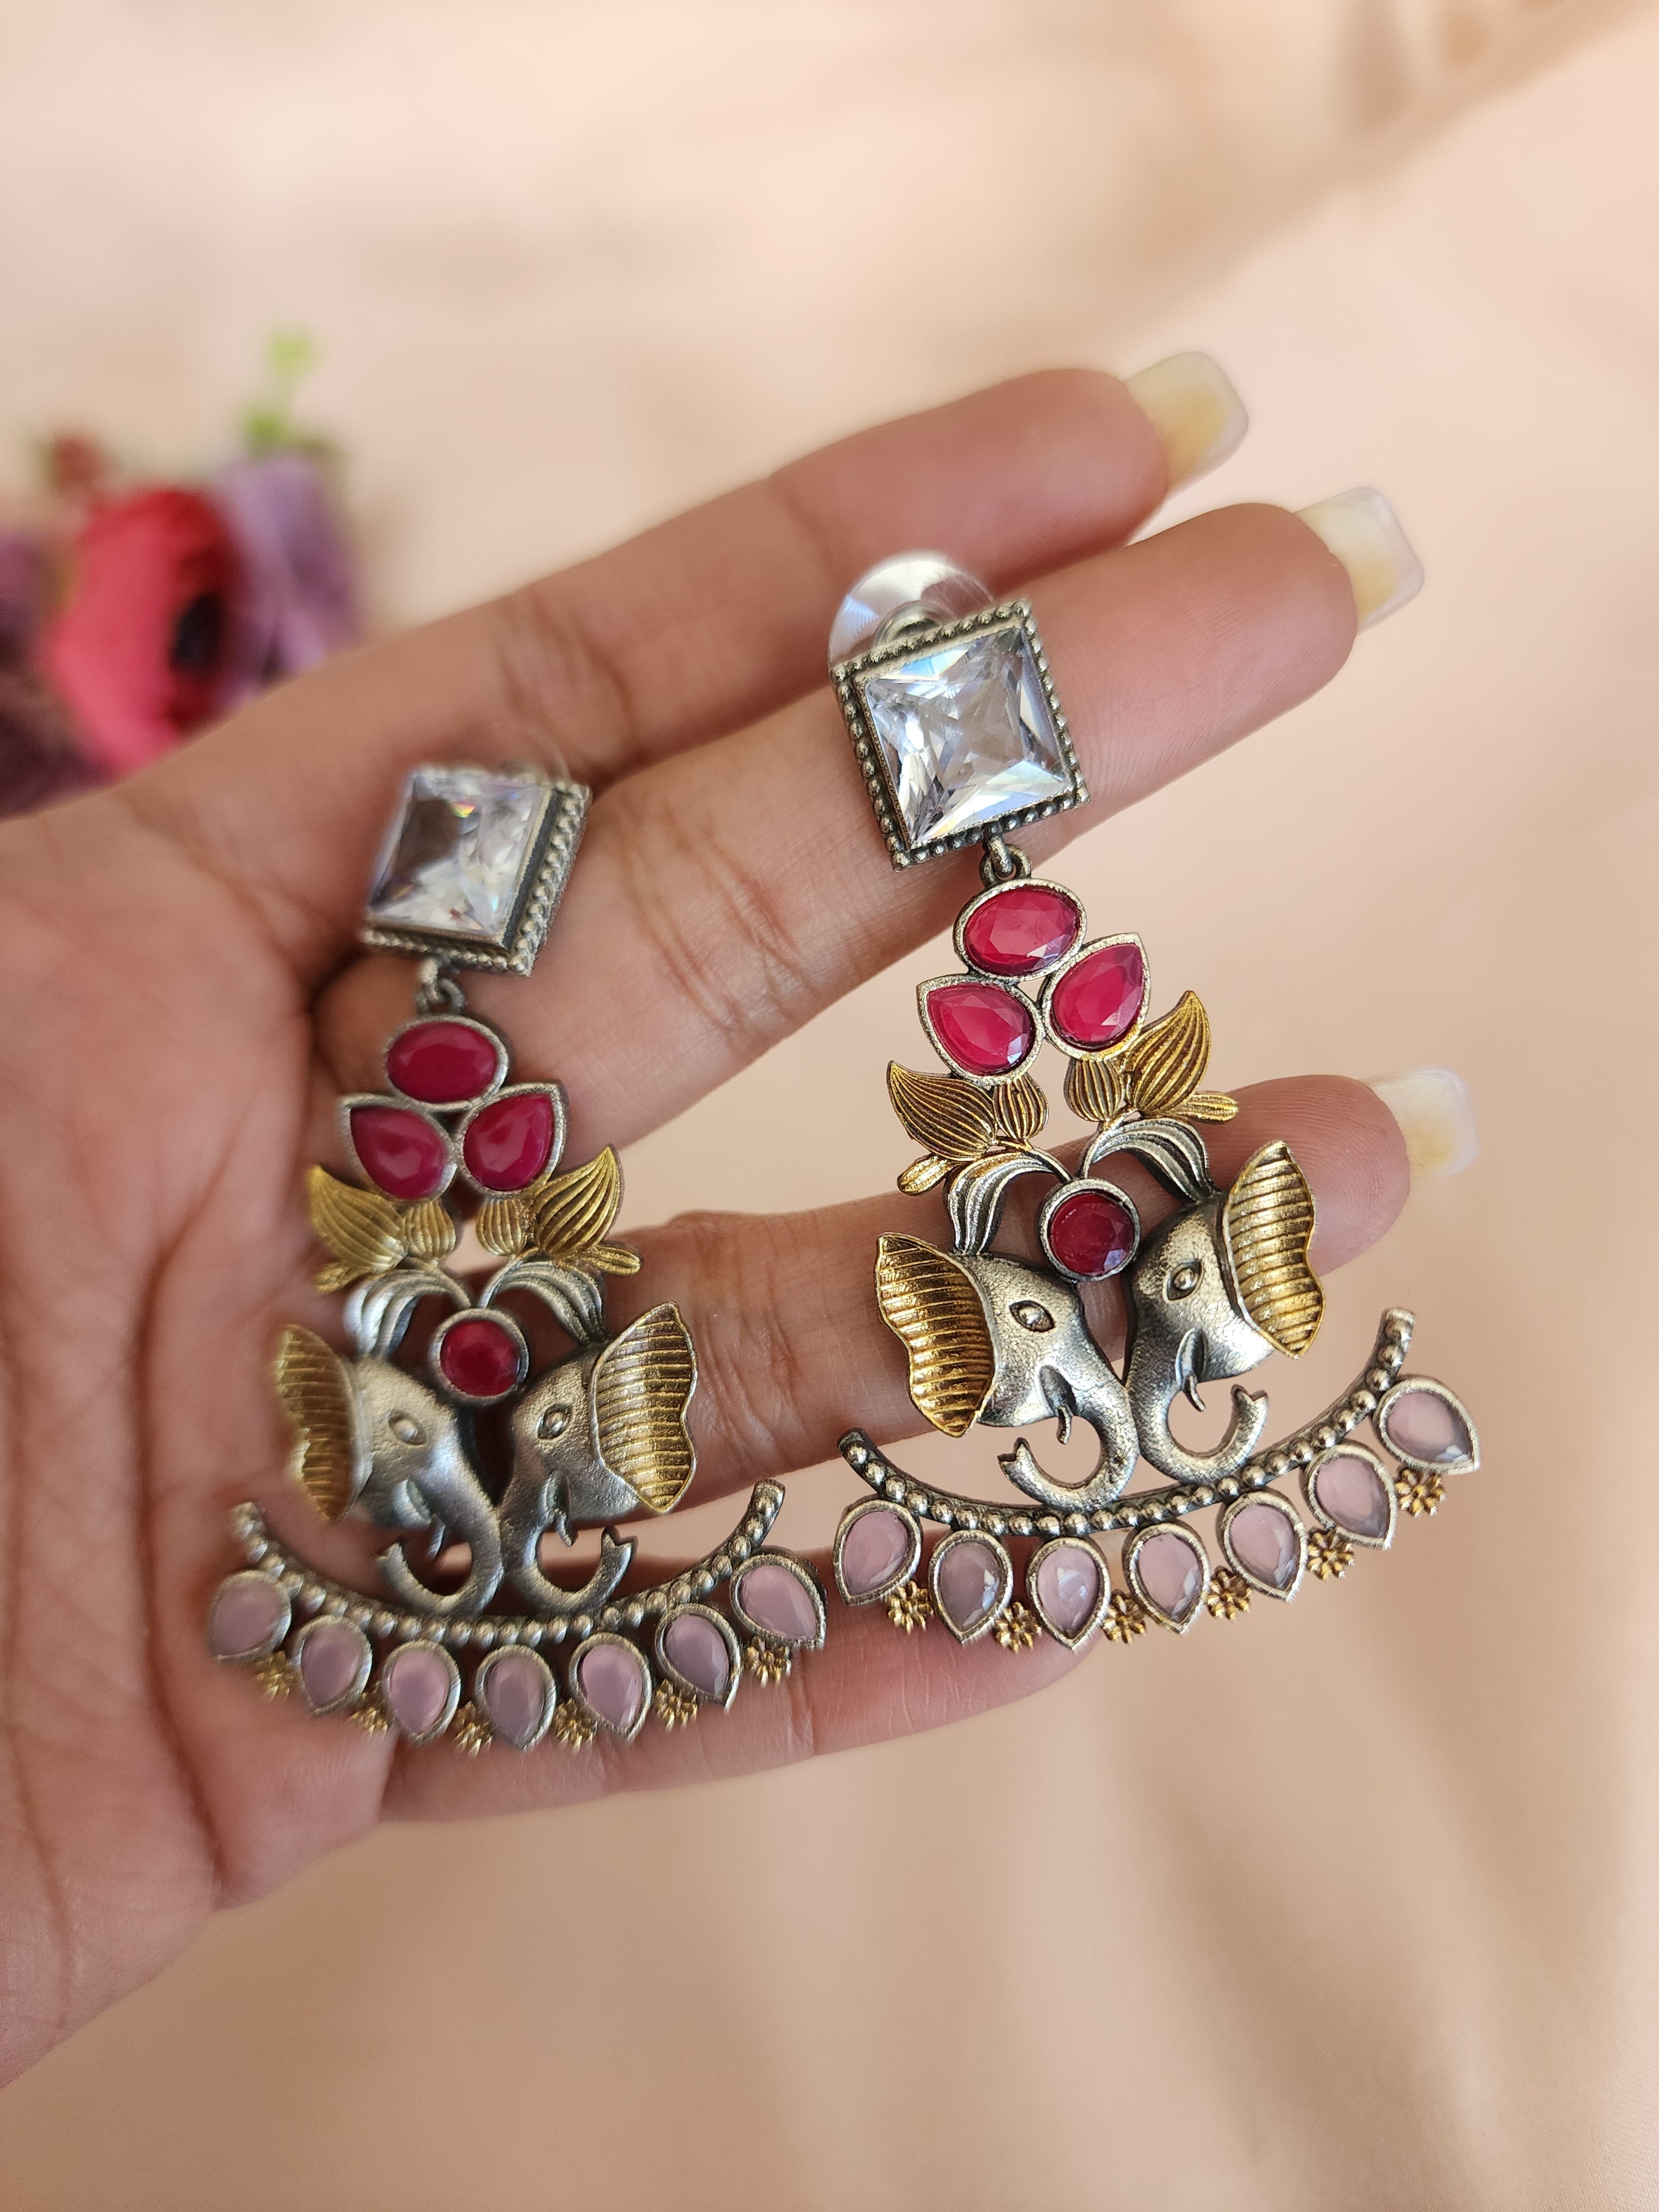 Elephant dualtone silver alike stud earrings